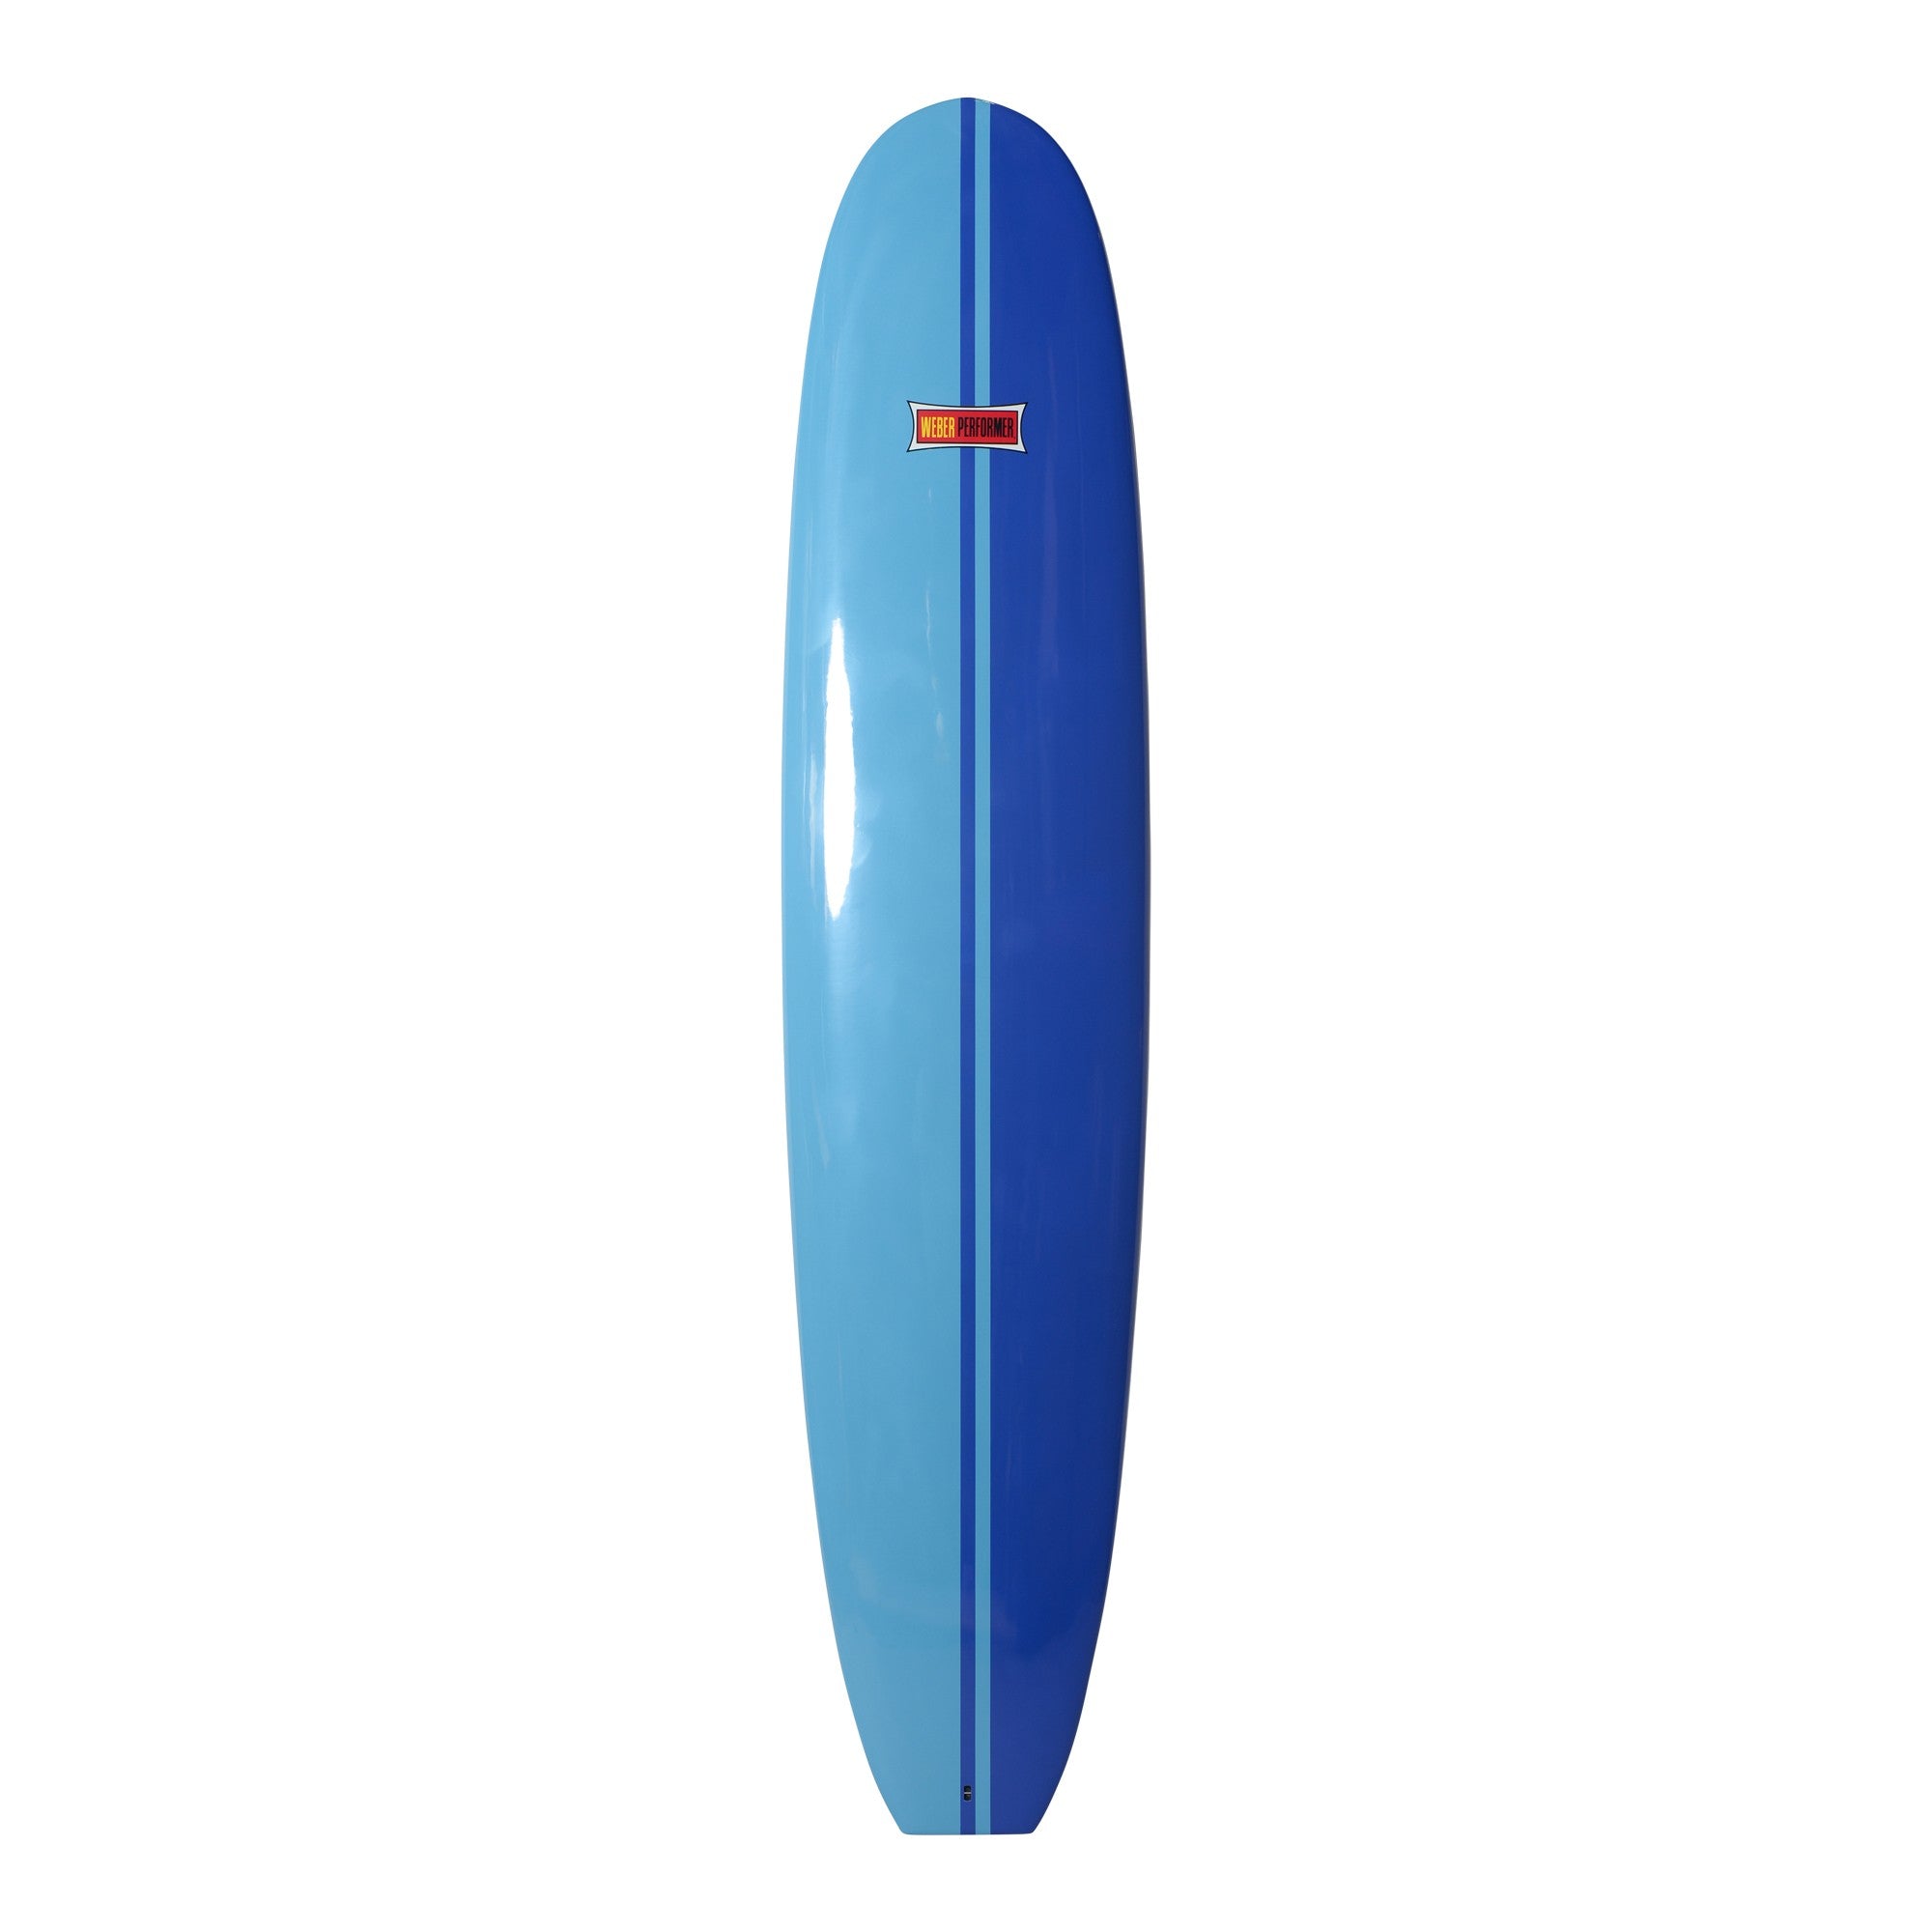 WEBER SURFBOARDS - Performer 9'4 - Blue